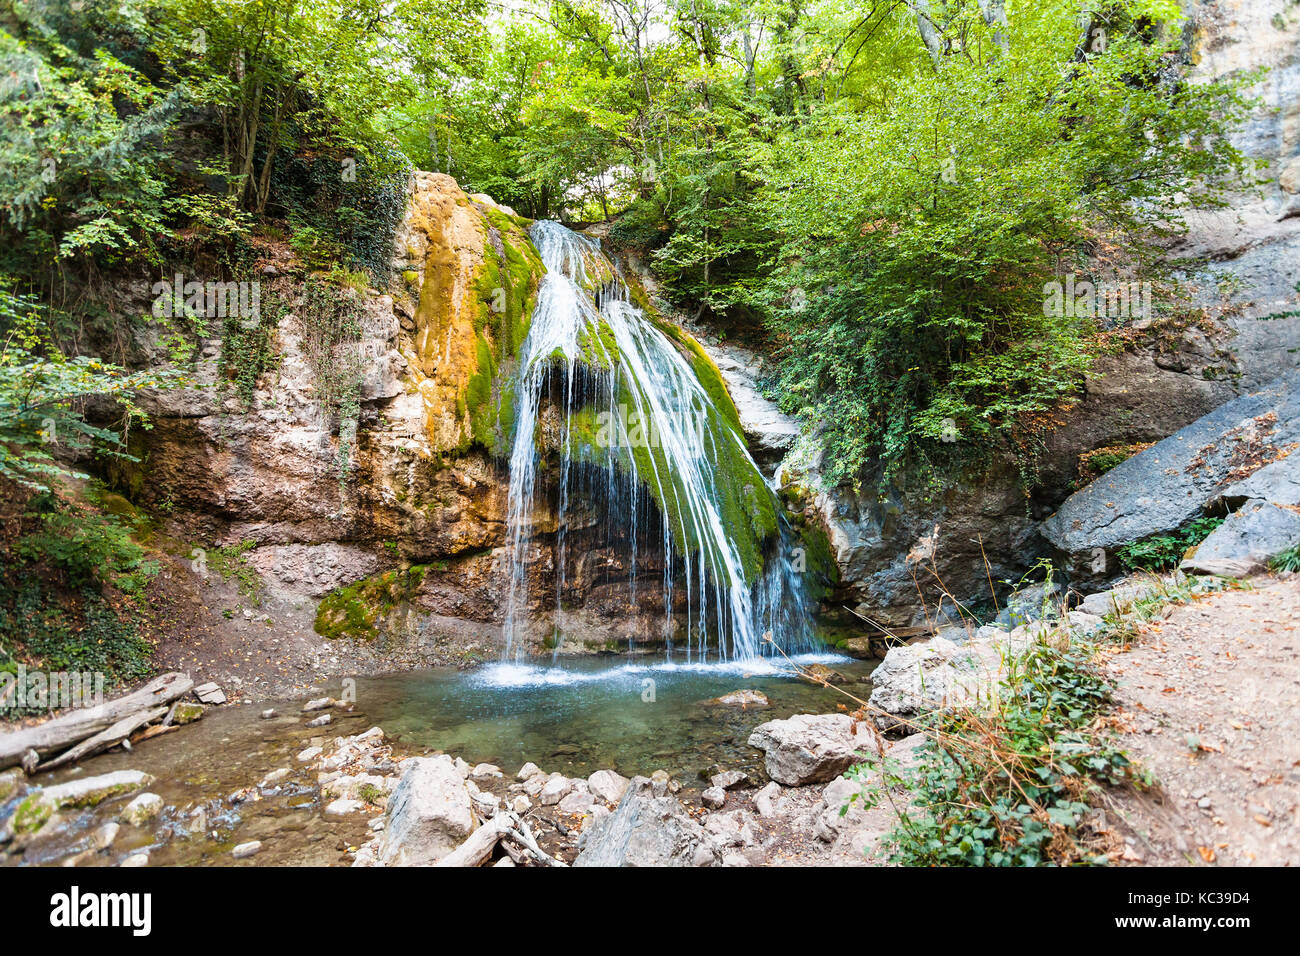 Reise auf die Krim - Ulu-Uzen Fluss mit Djur - djur Wasserfall Haphal Schlucht von Habhal Hydrologischen finden Naturpark in Krim Berge im Herbst. Stockfoto